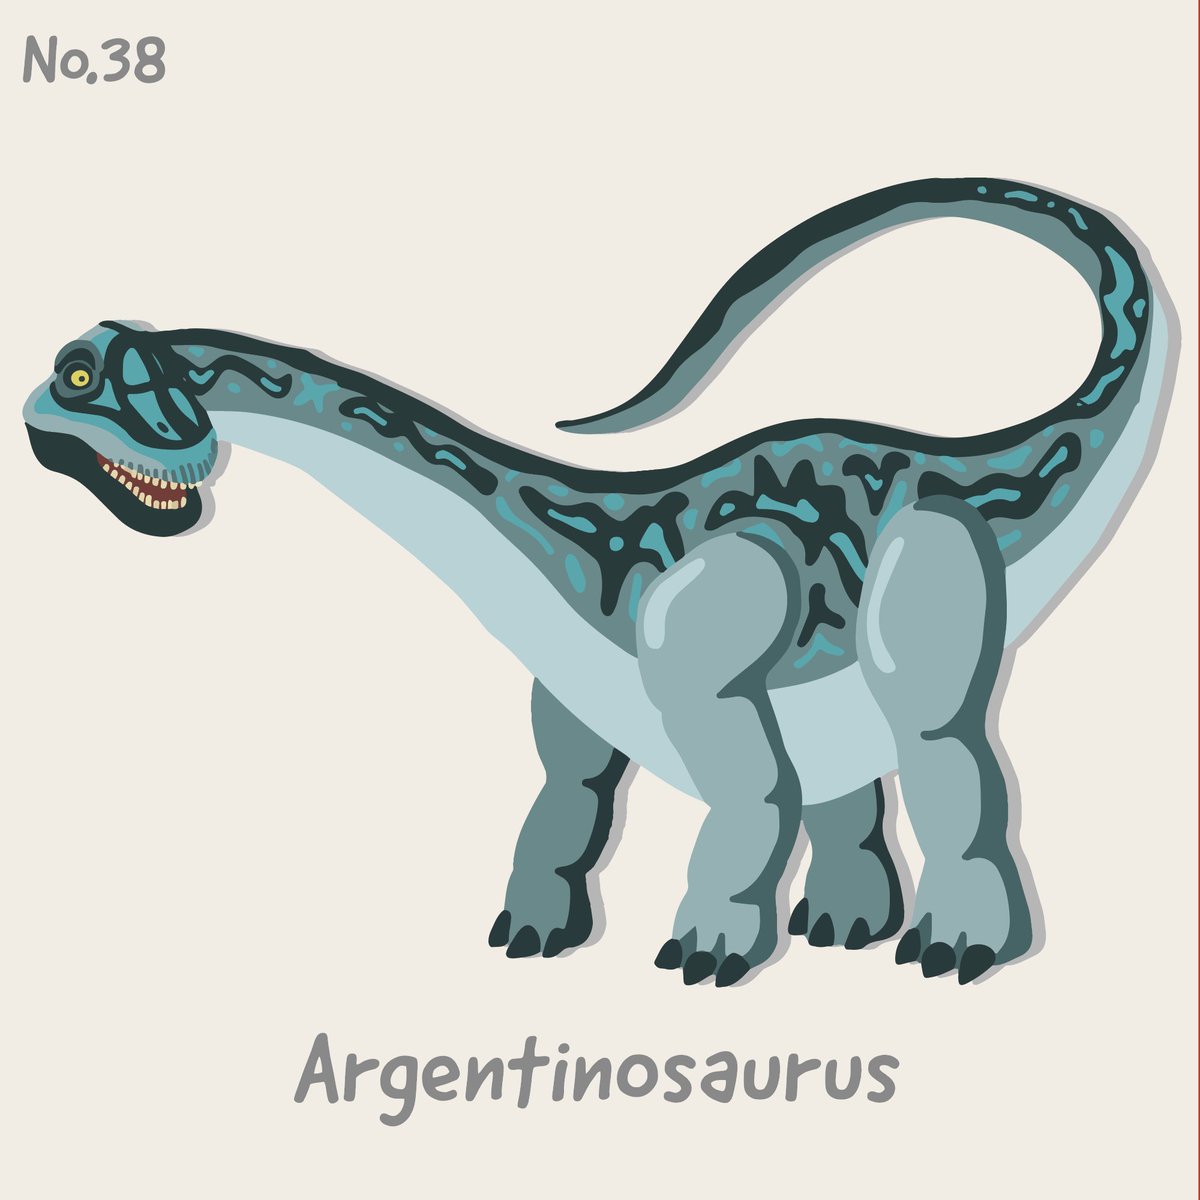 ケータ 恐竜イラストレーター No 38 Argentinosaurs アルゼンチノサウルス 史上最大のデカさであっただろう アルゼンチノサウルス アフリカゾウ10頭分に相当するんだって象 アルゼンチノサウルス Argentinosaurus